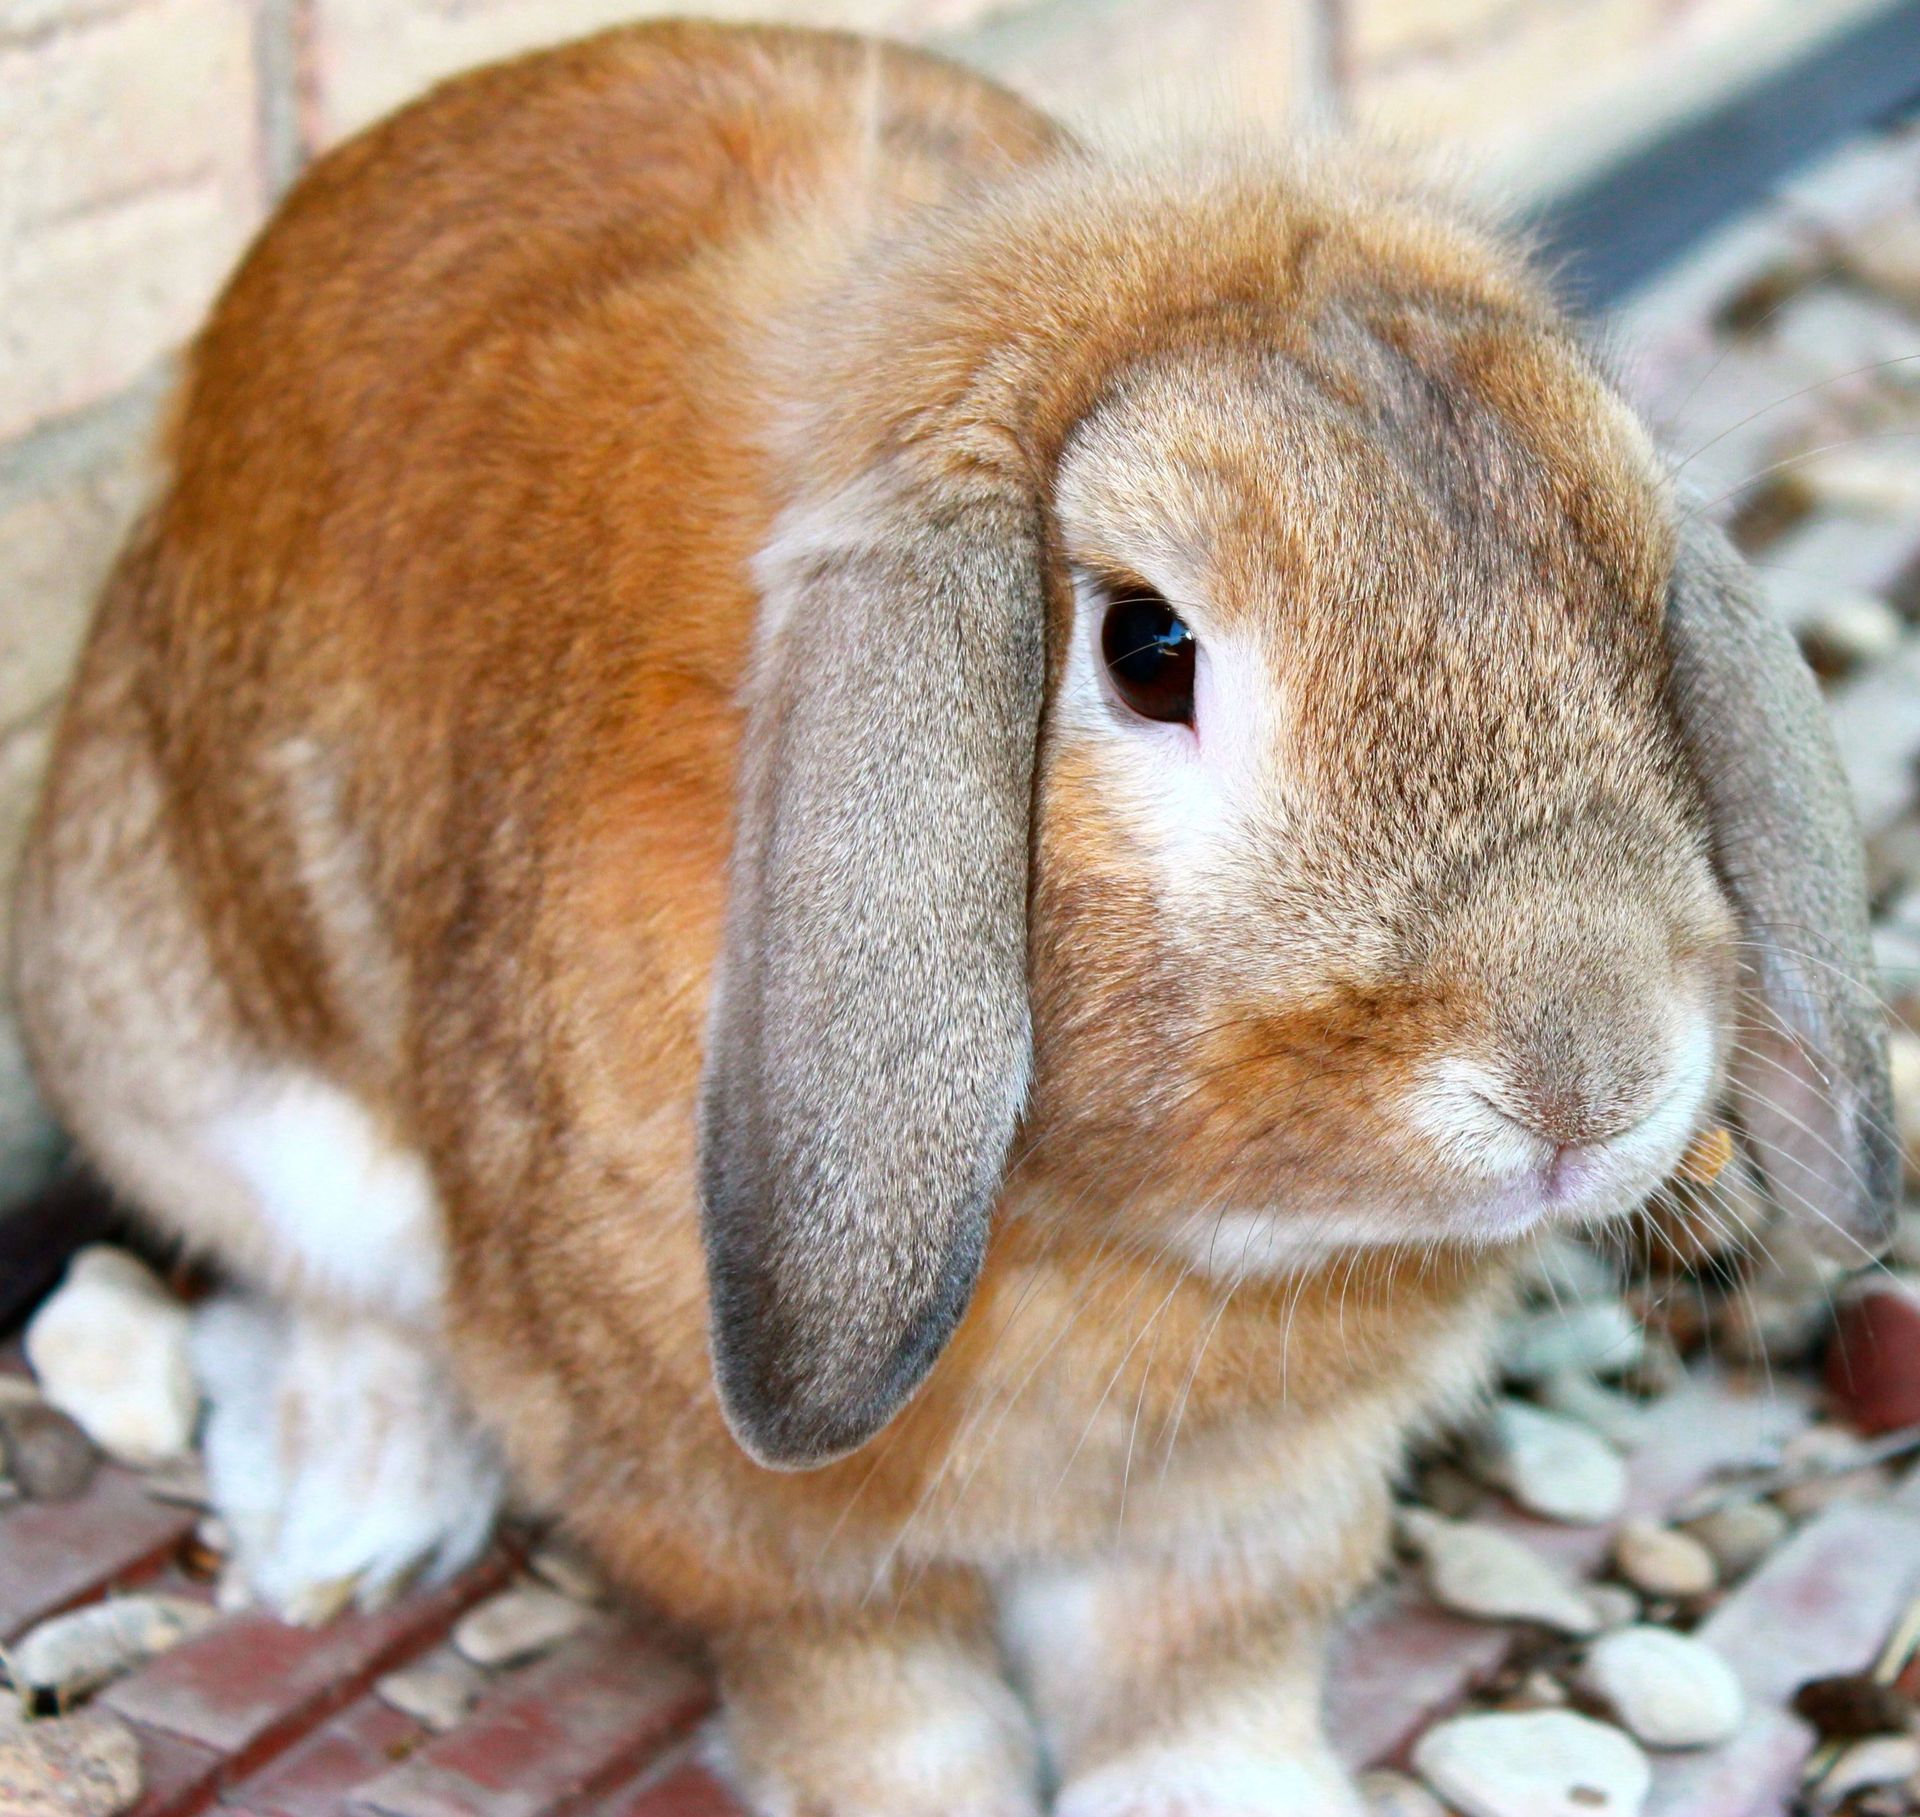 A portrait of a long-eared rabbit.